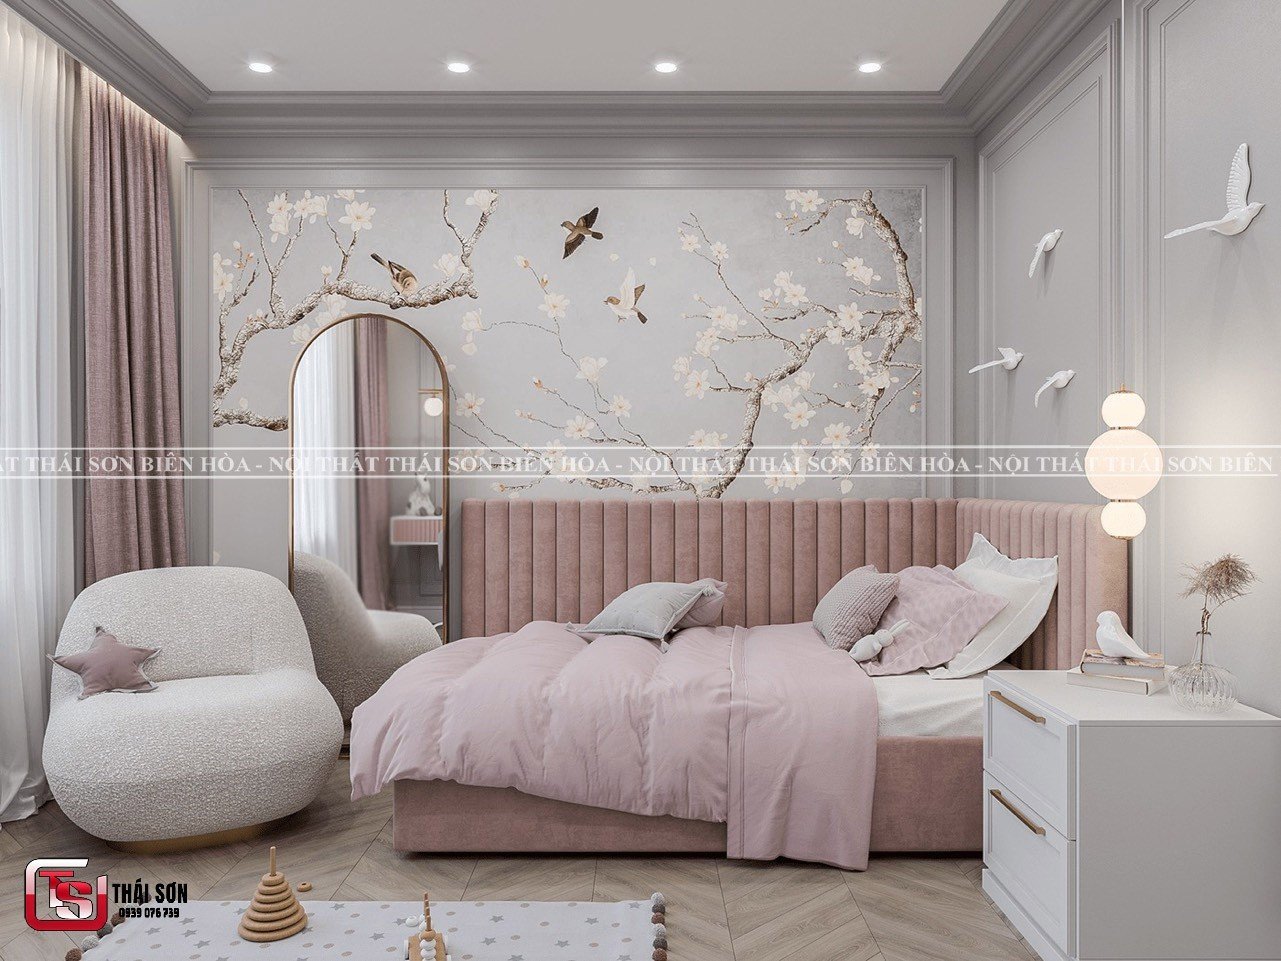 Phòng ngủ thiếu nữ - Phong cách Tân cổ điển